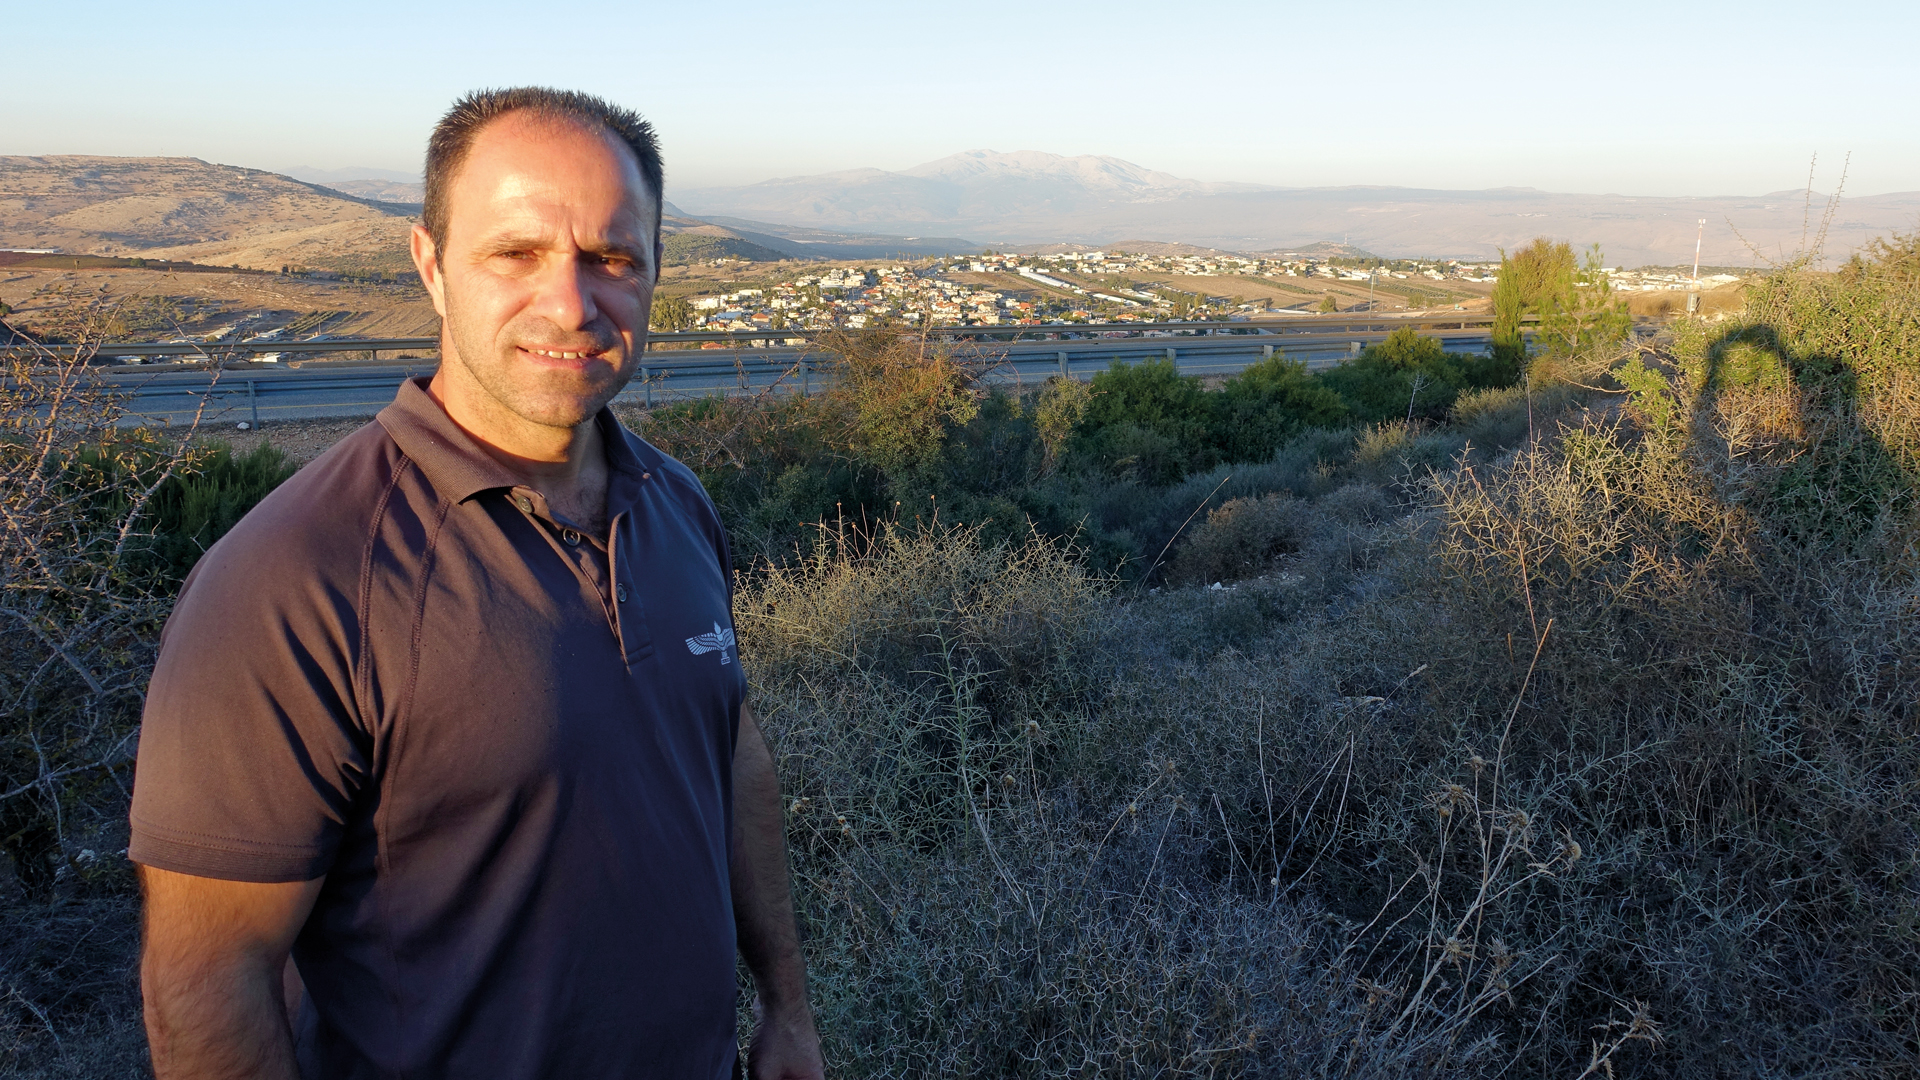 Unermüdlich setzt sich Schadi Challul für die Stärkung der aramäischen Identität in Galiläa ein